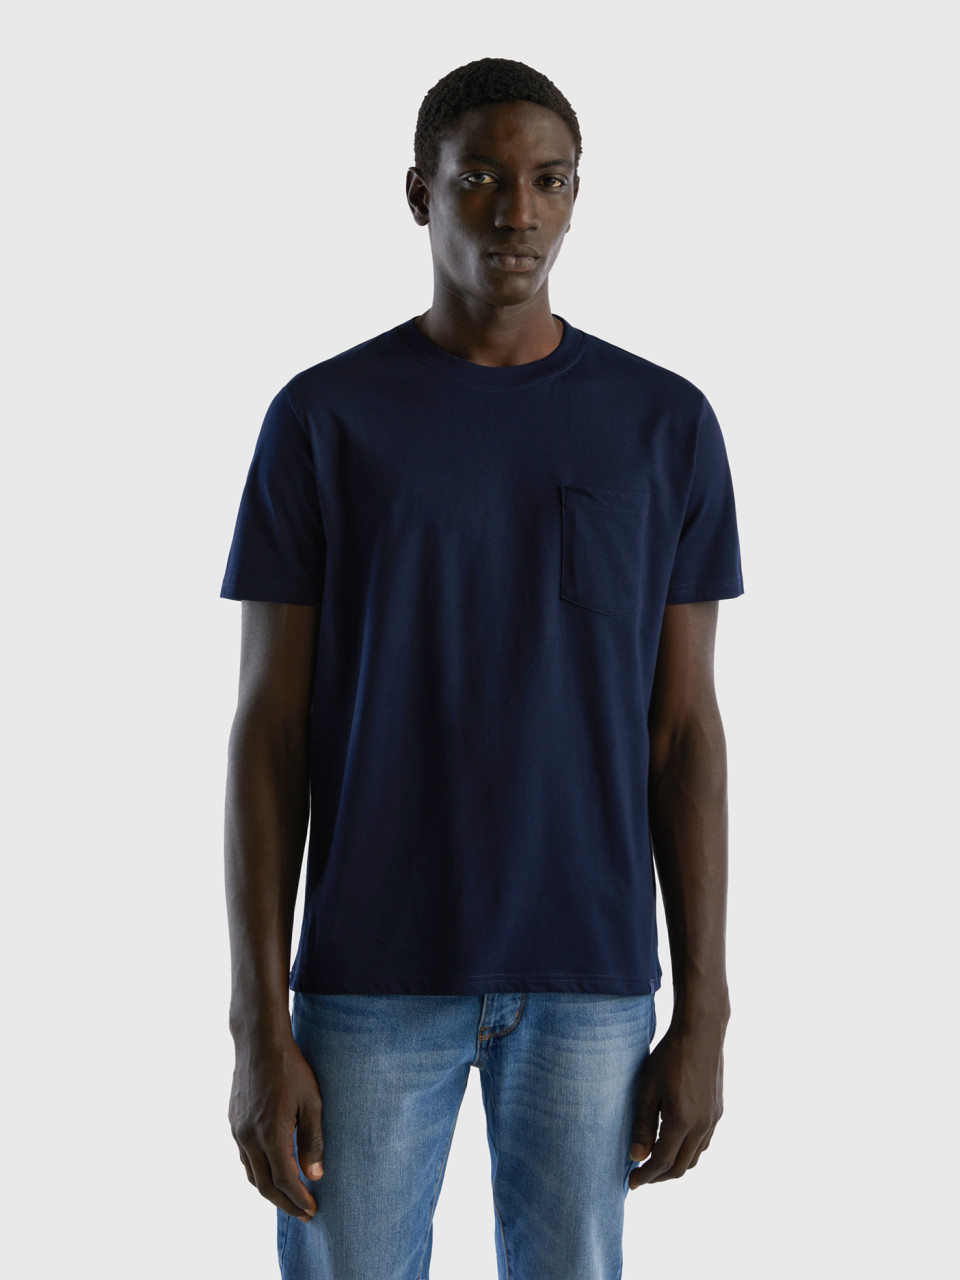 Benetton, 100% Cotton T-shirt With Pocket, Dark Blue, Men